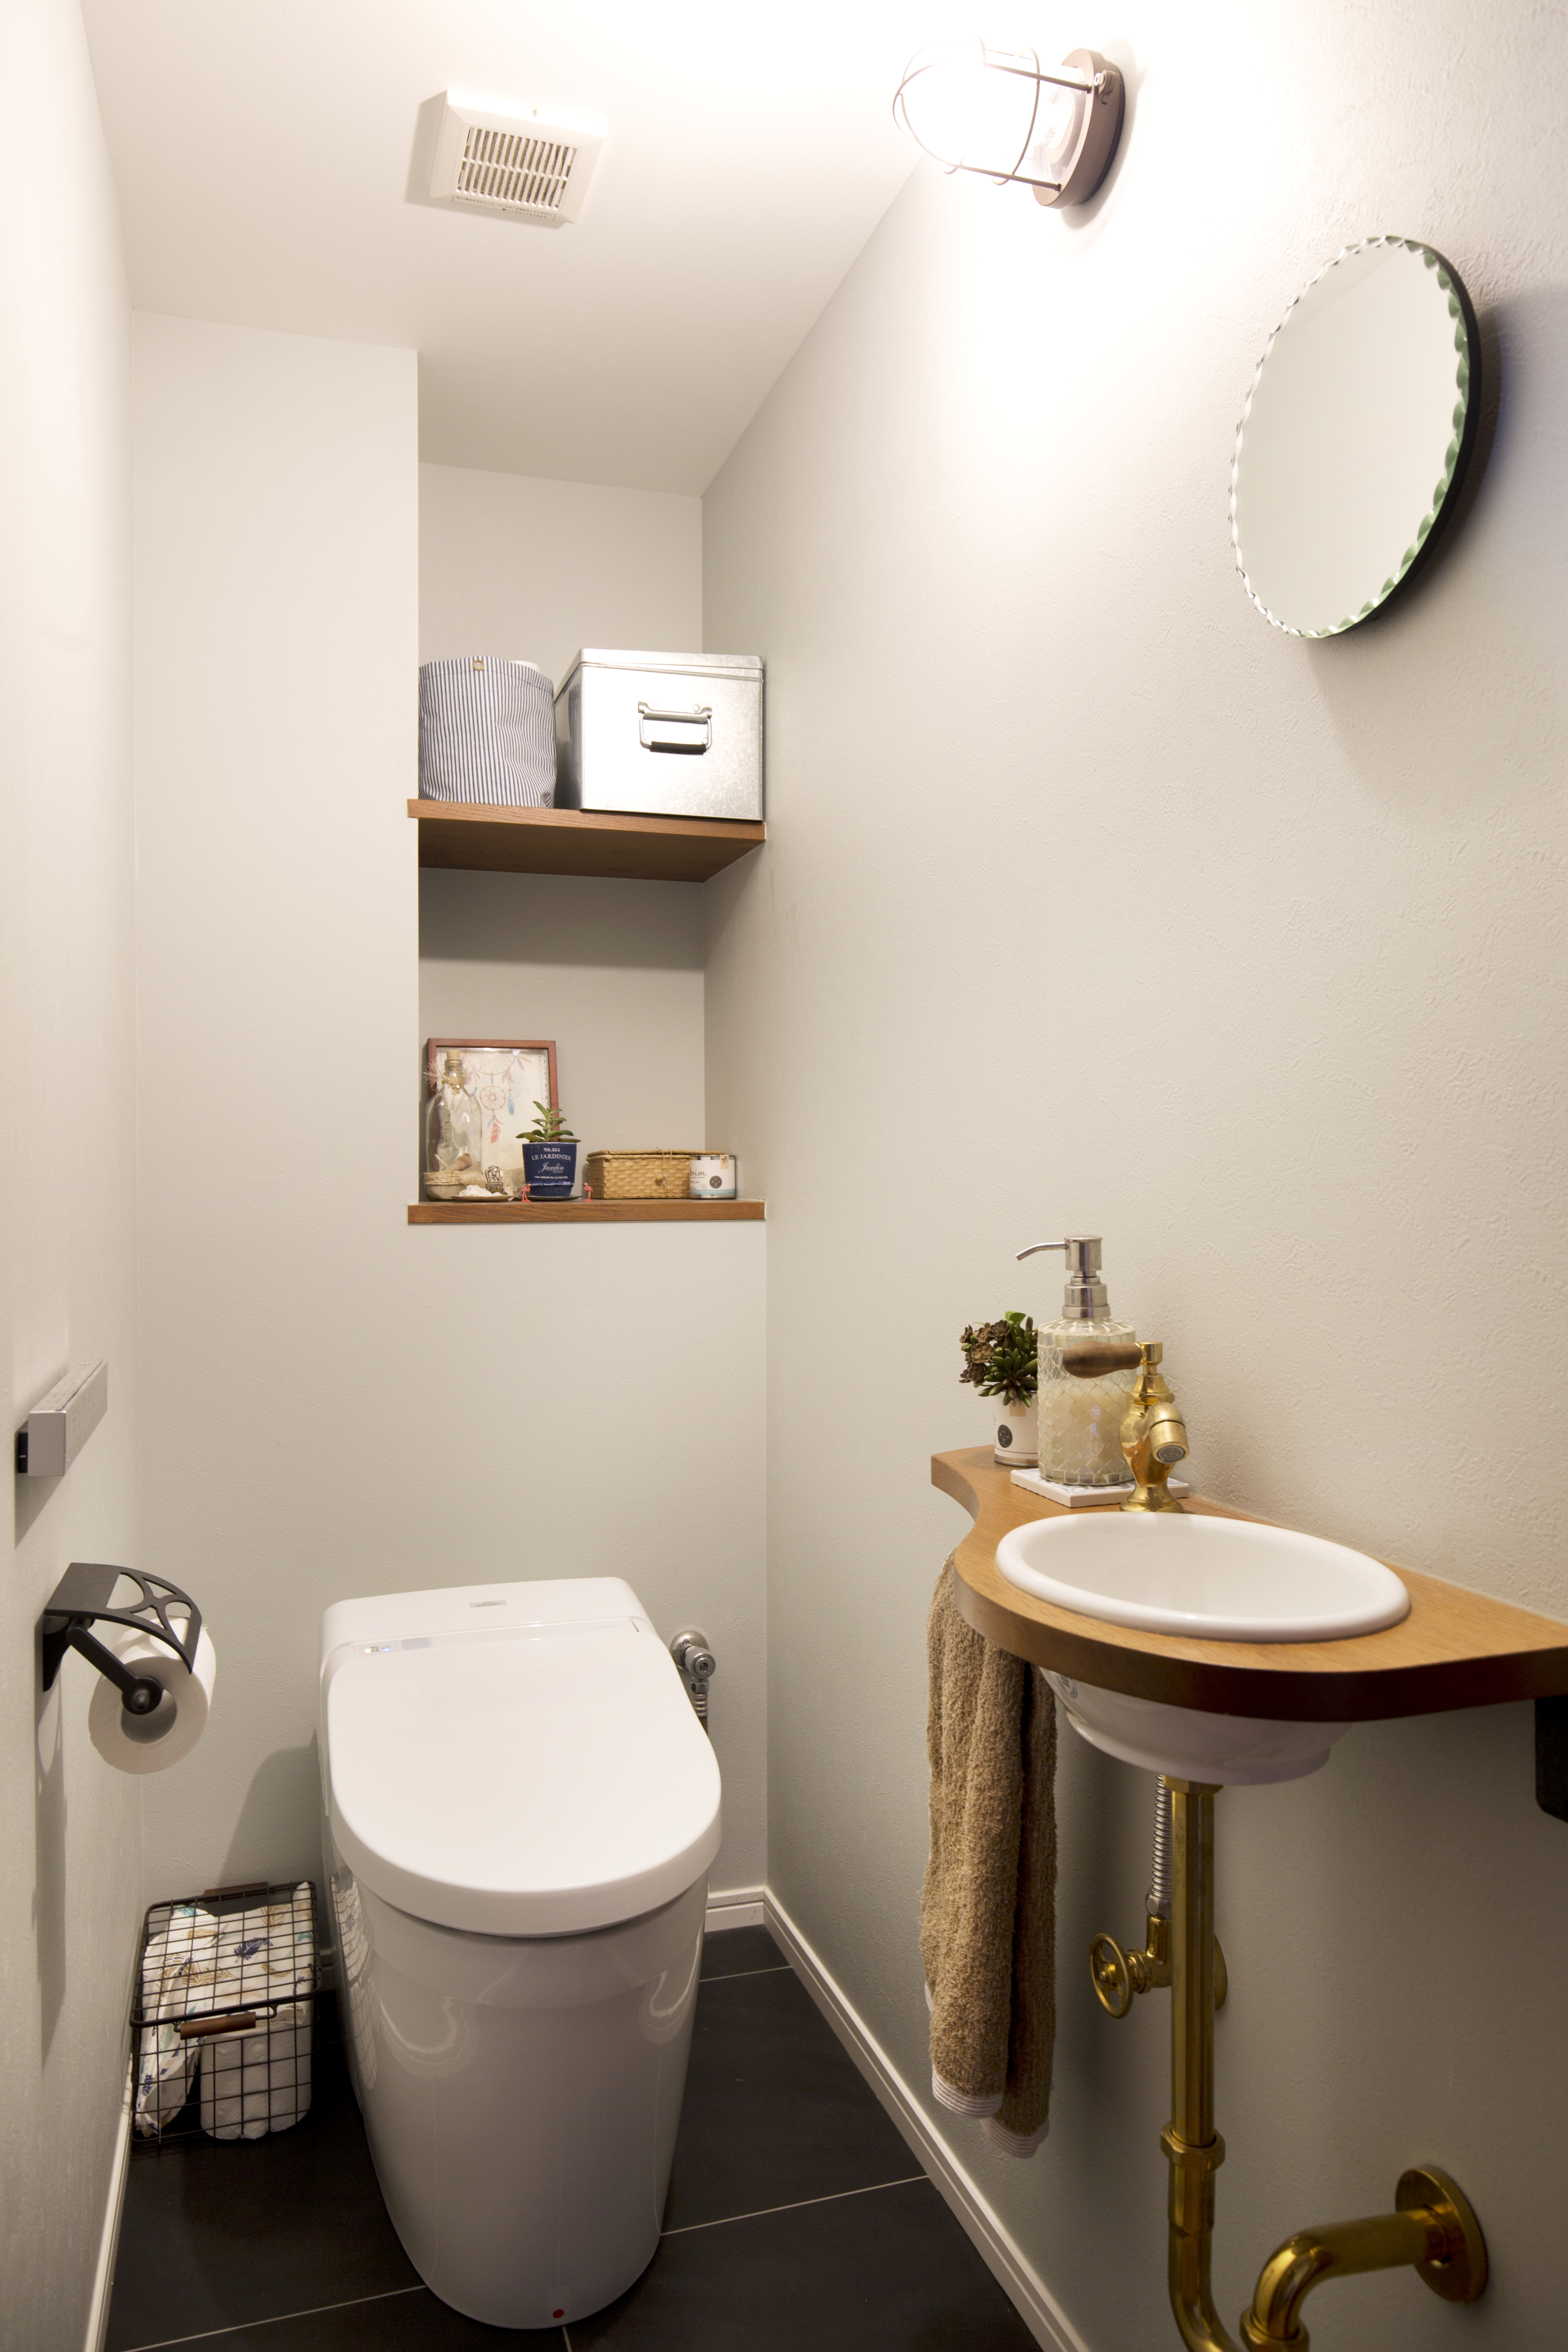 実例集 おしゃれなトイレのニッチ7選 取り入れるときの注意点も紹介 リノベーションのshuken Re マンション 住宅 中古物件をリフォームやリノベで住みやすくデザインし施工します